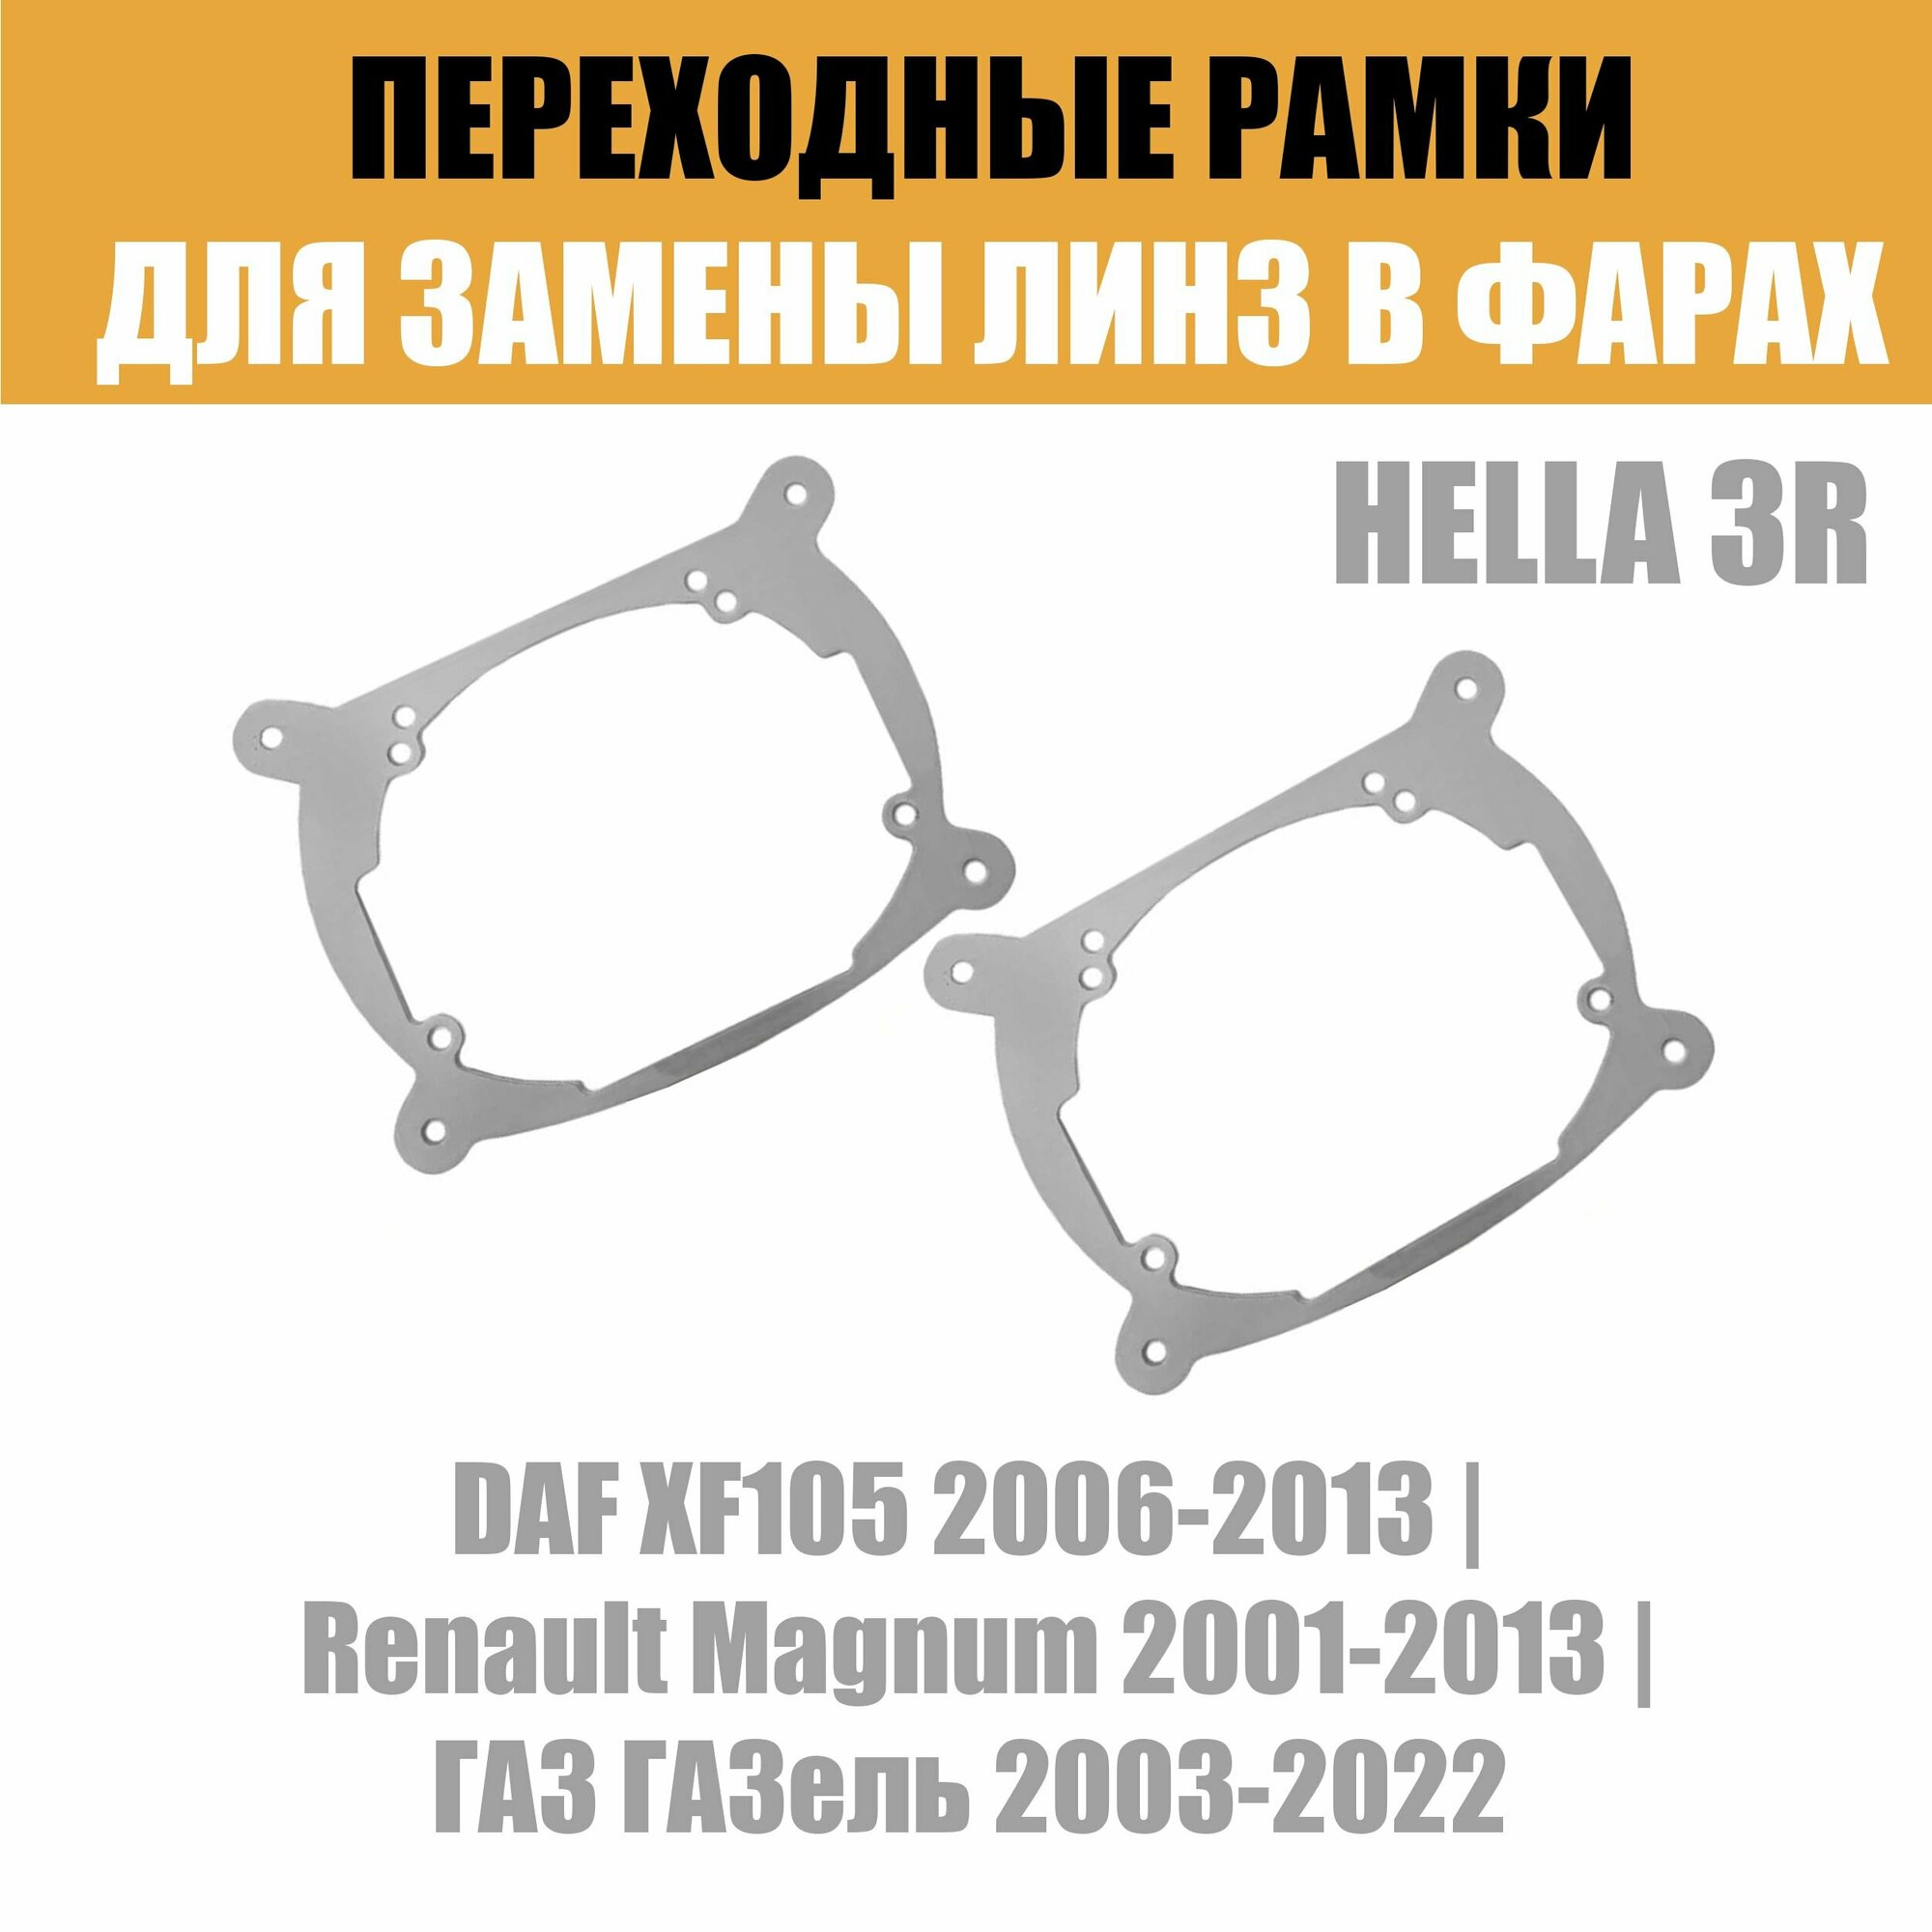 Переходные рамки для линз №7 на ГАЗ ГАЗель DAF Renault под модуль Hella 3R/Hella 3 (Комплект 2шт)